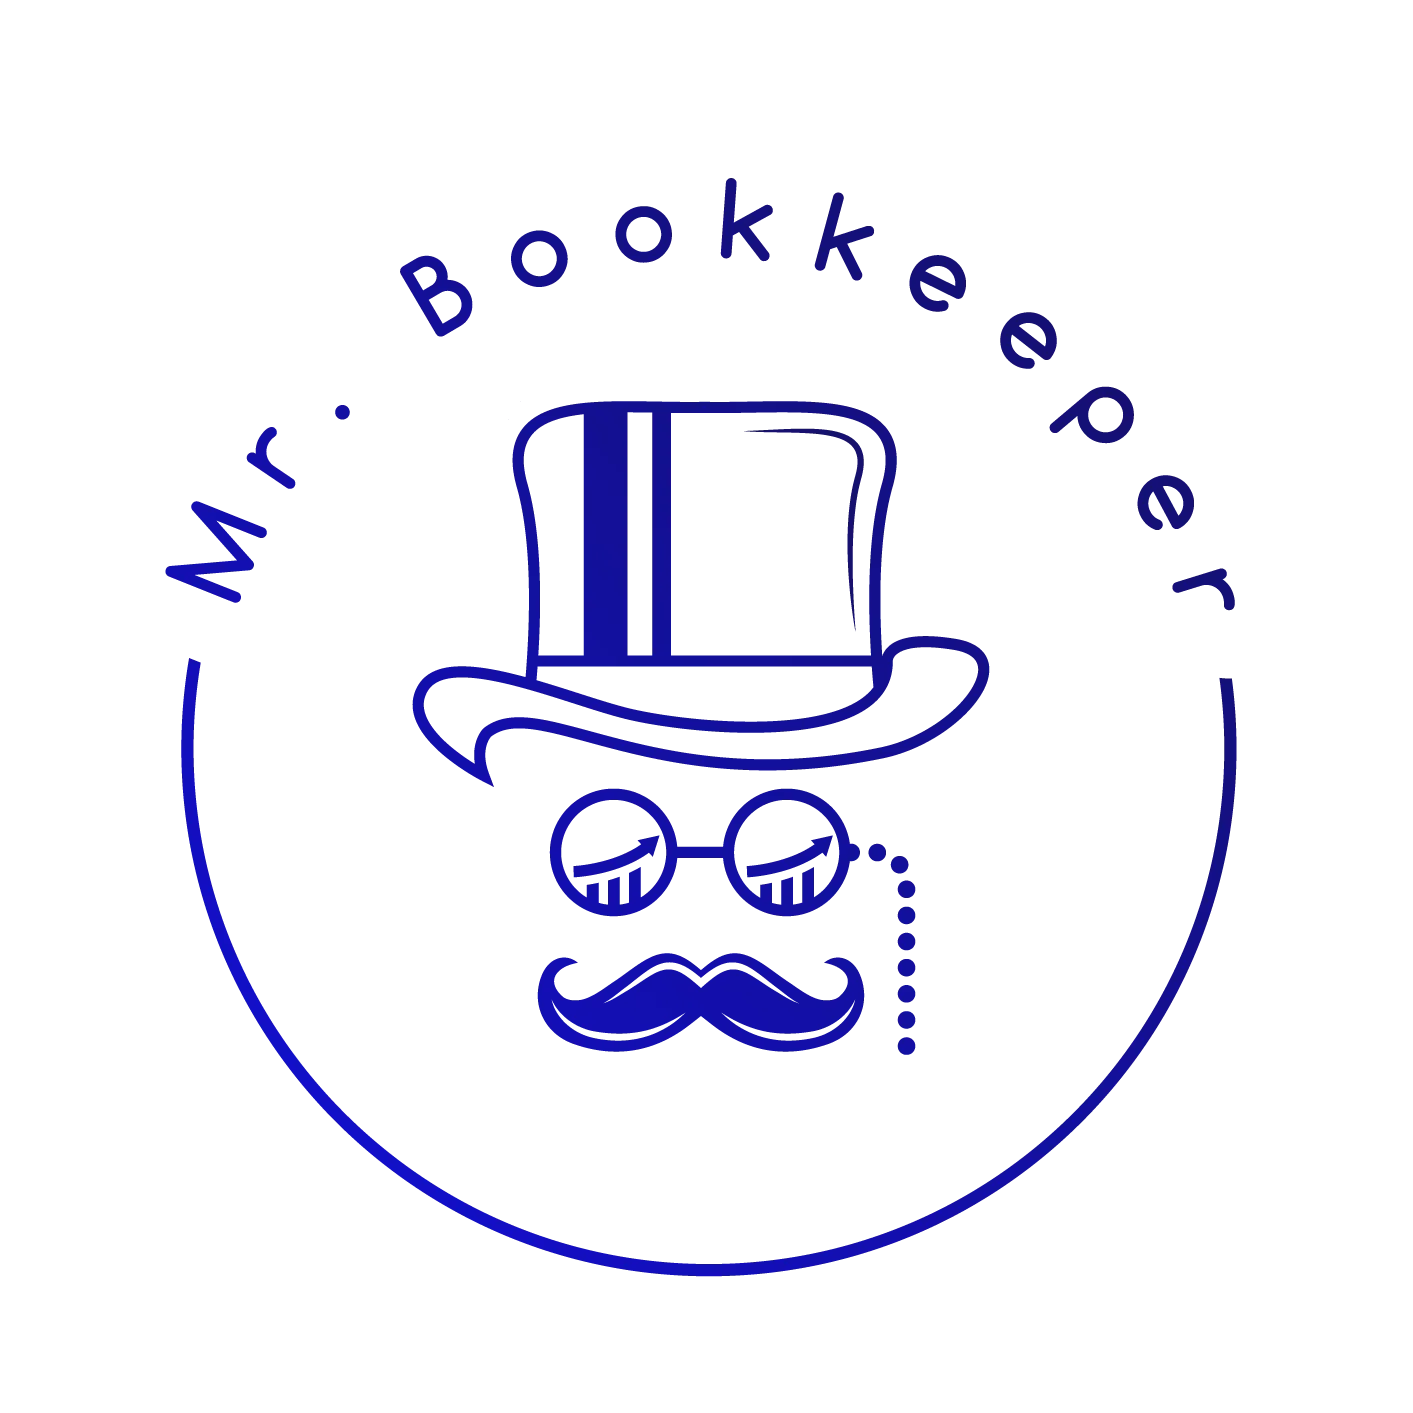 Mr. Bookkeeper - Belastingaangifte